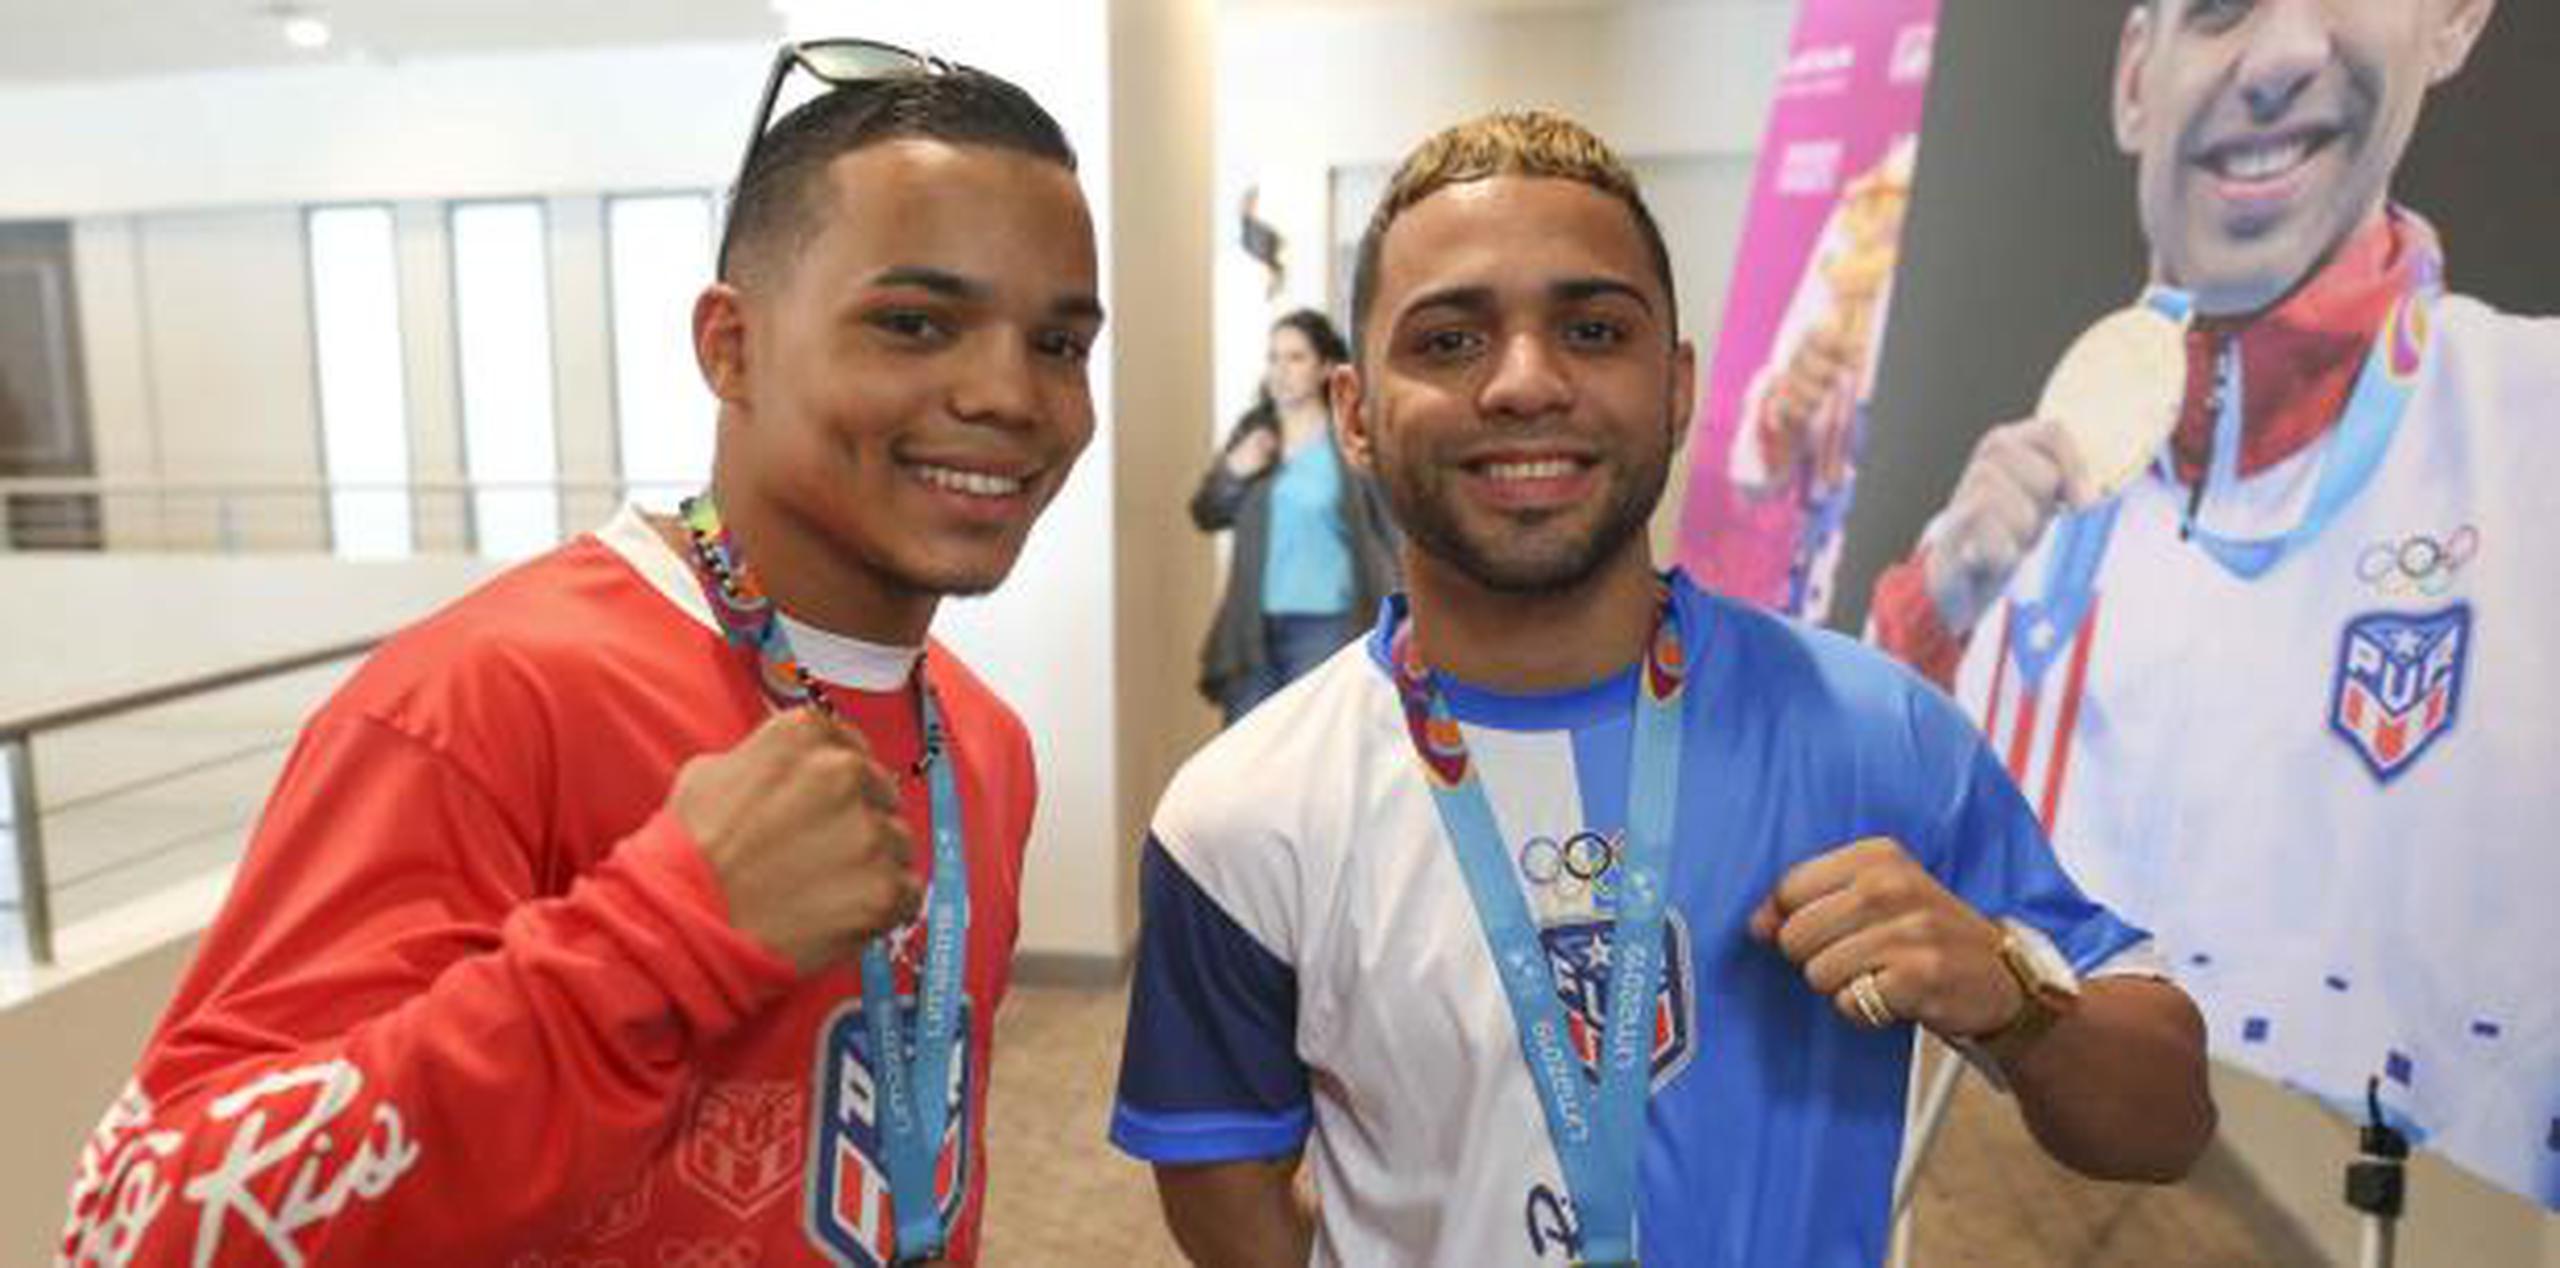 Entre los candidatos a ir al Mundial estaban los medallistas en los Juegos Panamericanos Oscar Collazo, quien ganó oro en los 49 kilogramos, y Yankiel Collazo, quien ganó bronce en los 52 kilogramos. (Archivo)